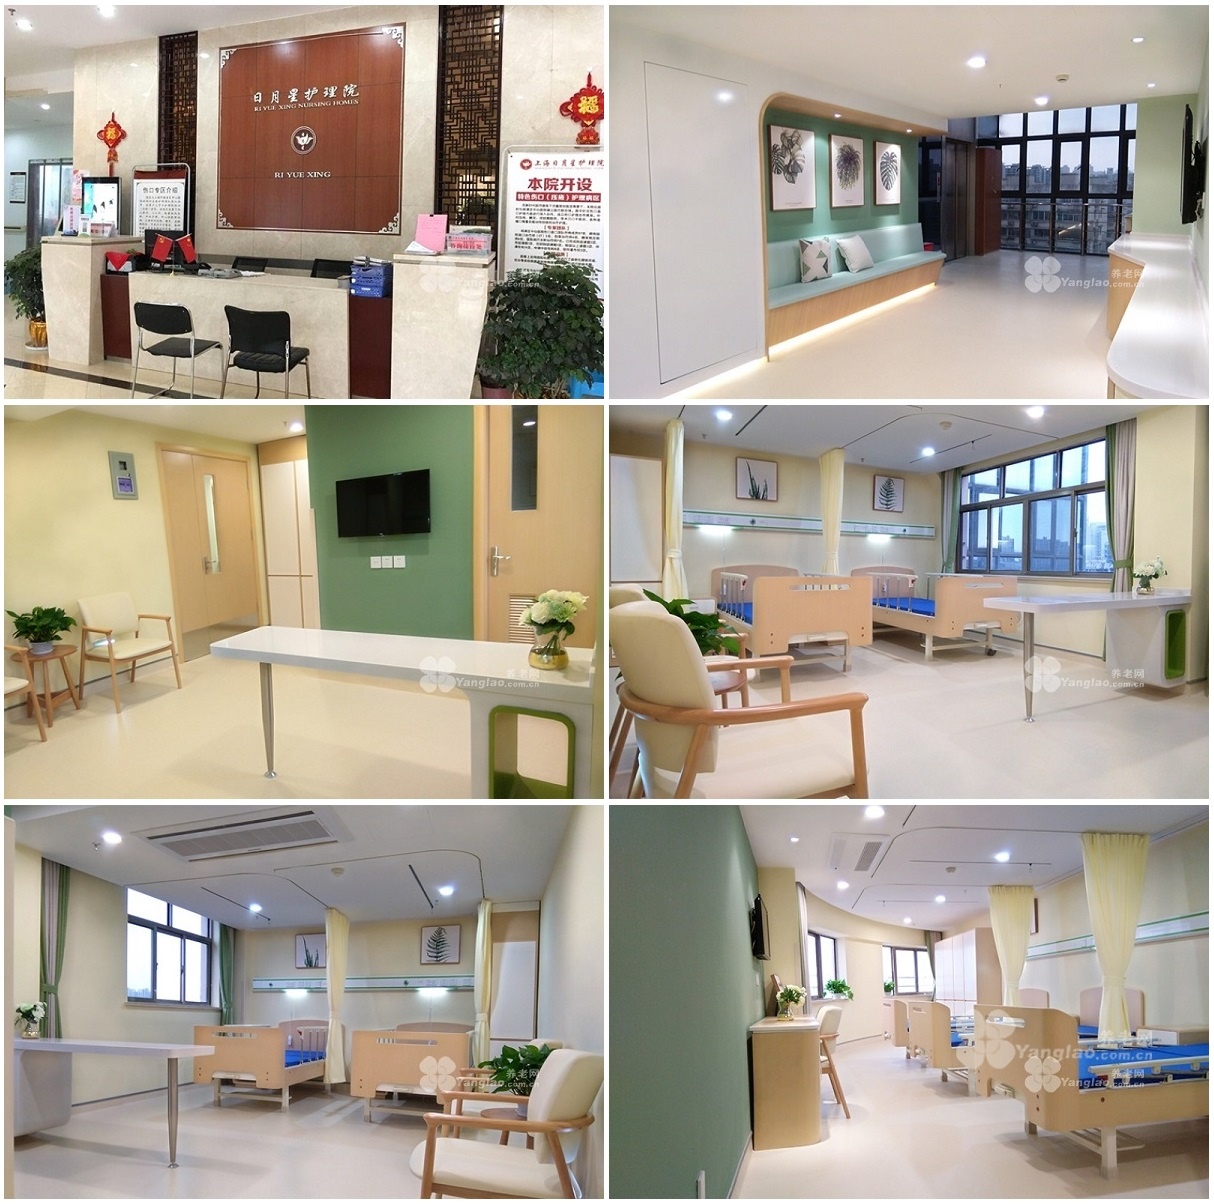 4、上海医保定点养老院有多少？谢谢大家。